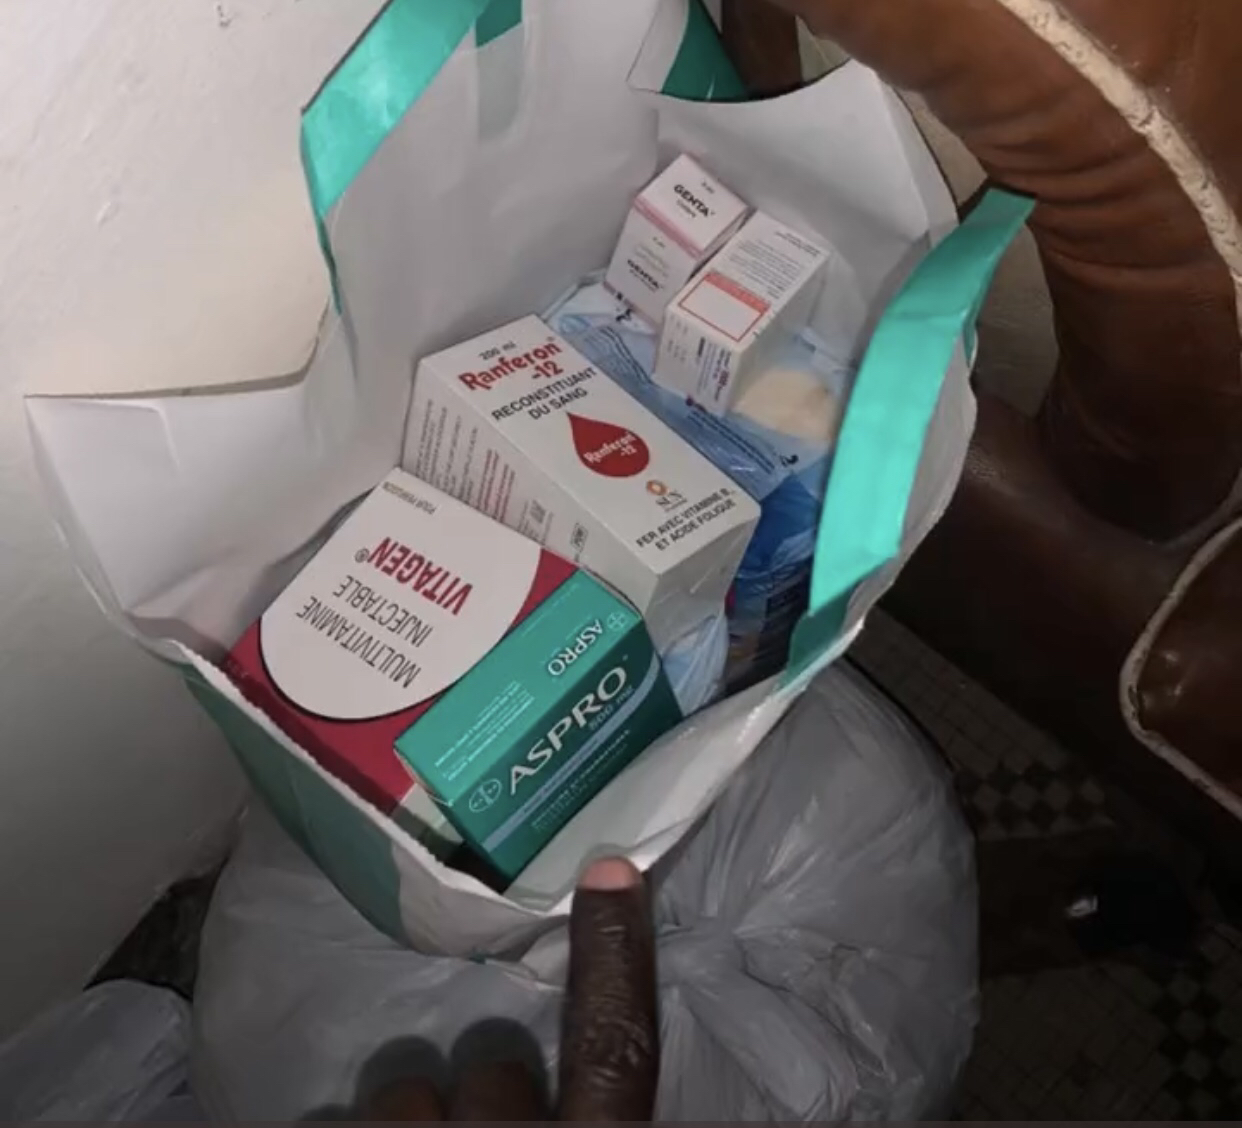 Lutte Trafic illicite : un aide pharmacien arrêté avec 4 cornets de chanvre indien et du matériel médical